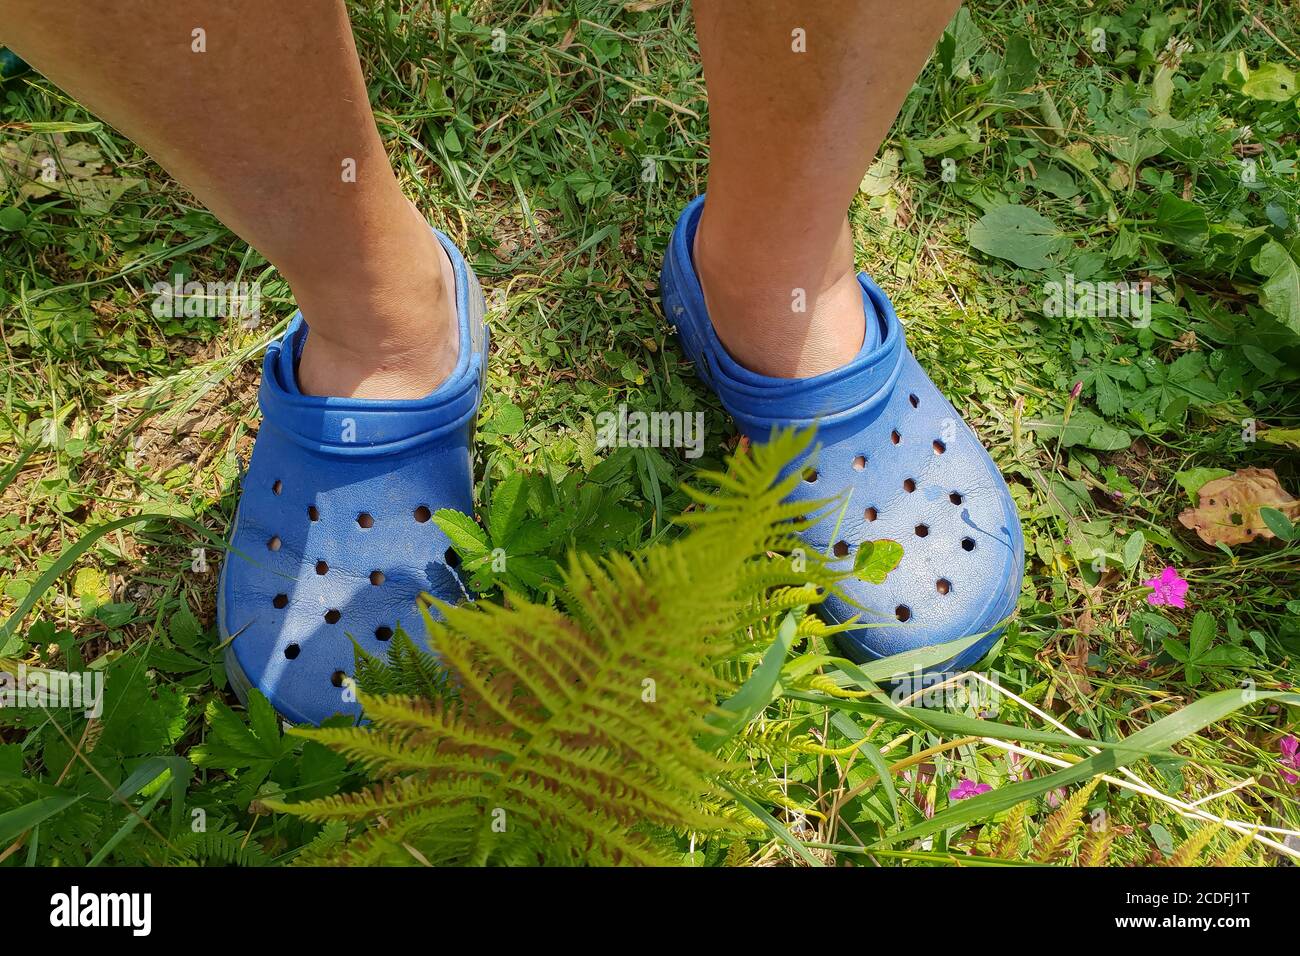 crocs on people's feet